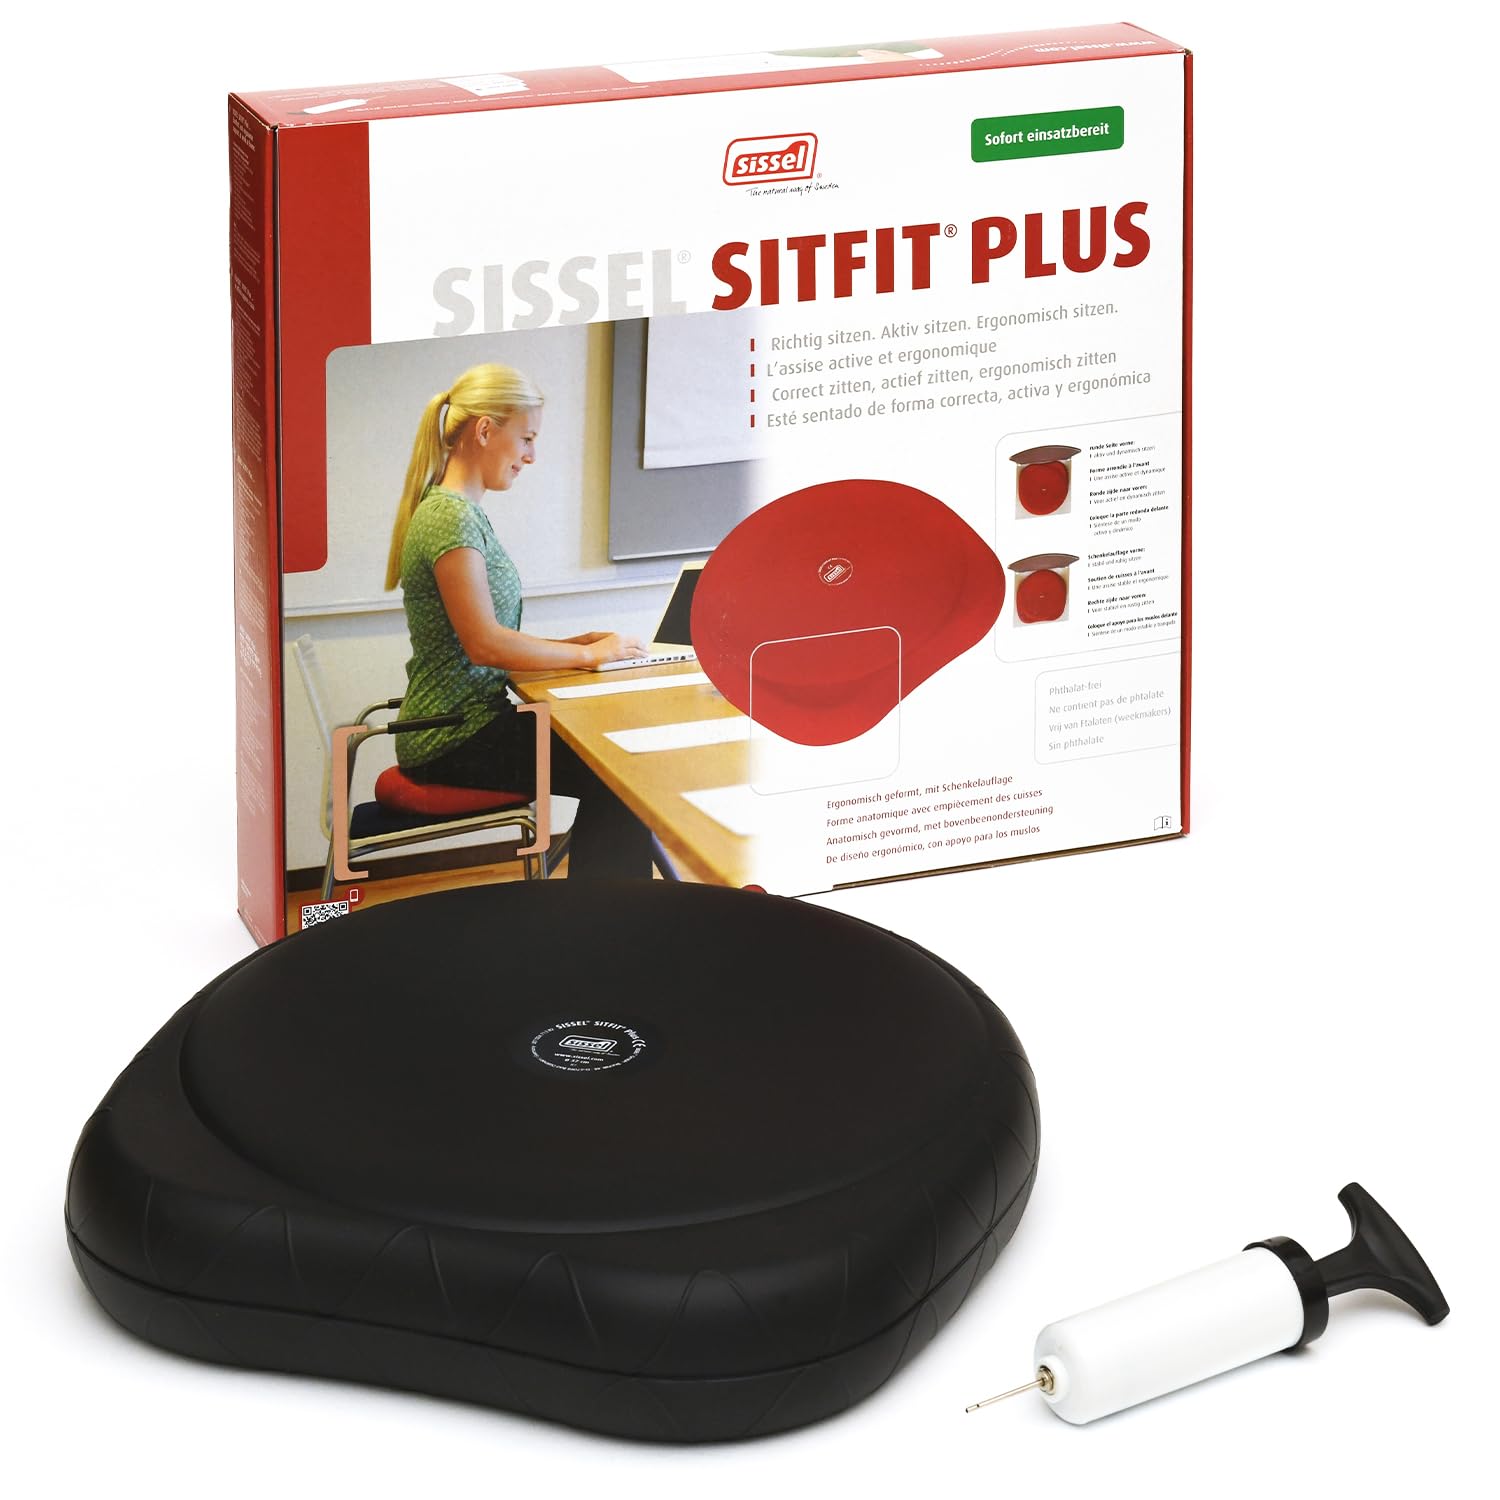 SISSEL SITFIT Plus, Luftgefülltes Sitzkissen, Balance und Sitzhaltung , Ø 37 cm, schwarz